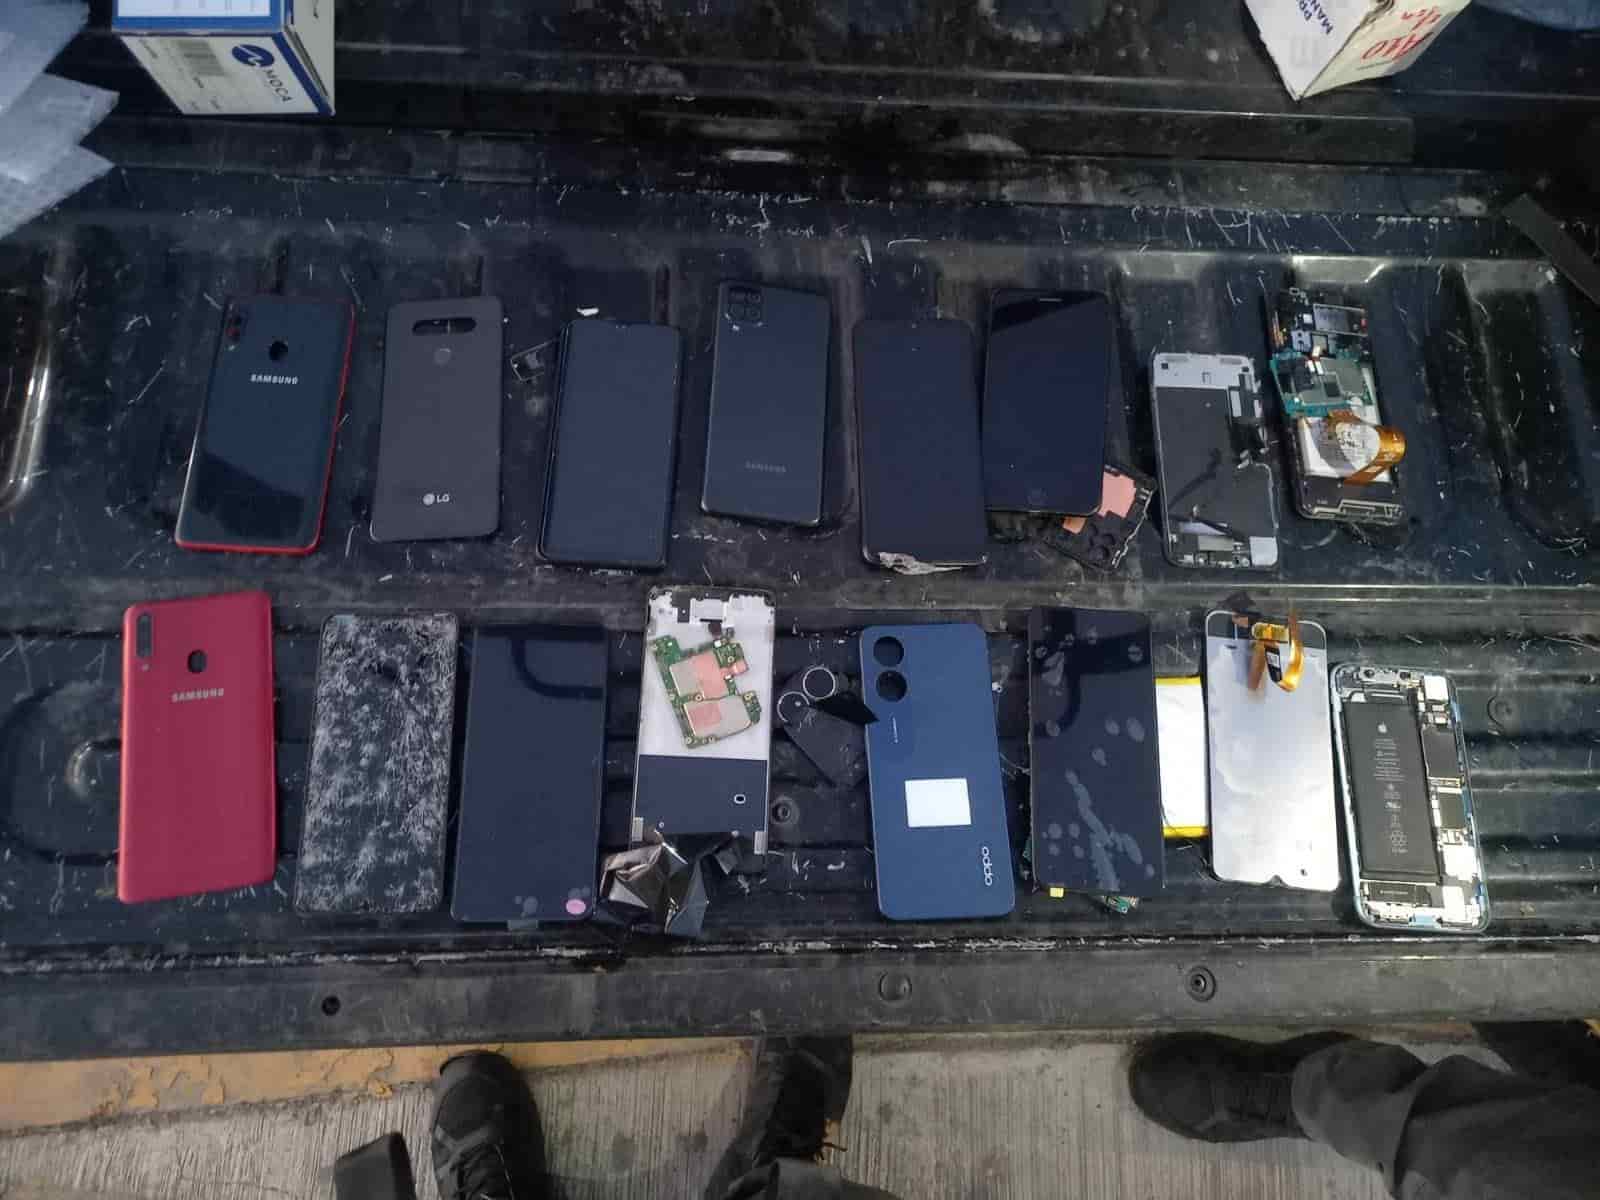 Un hombre fue detenido por oficiales del Grupo Ciclista de la Policía de Monterrey, tras presuntamente despojar de su teléfono celular a un usuario que esperaba el camión urbano, encontrándole además otros 16 aparatos al parecer robados, en el centro de la ciudad.